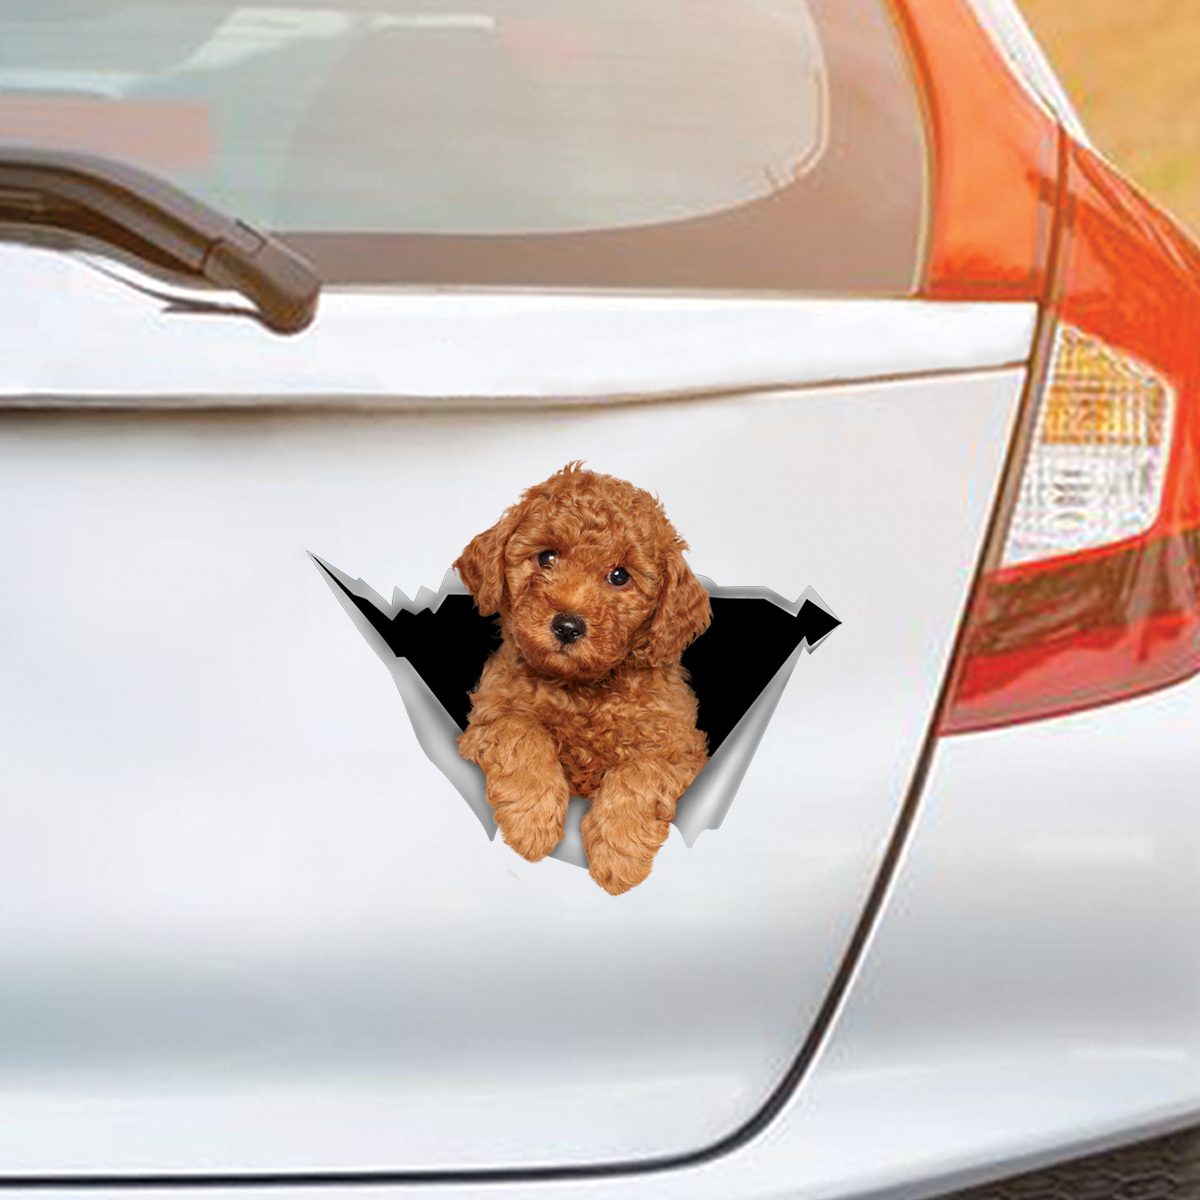 We Like Riding In Cars - Poodle Car/ Door/ Fridge/ Laptop Sticker V1